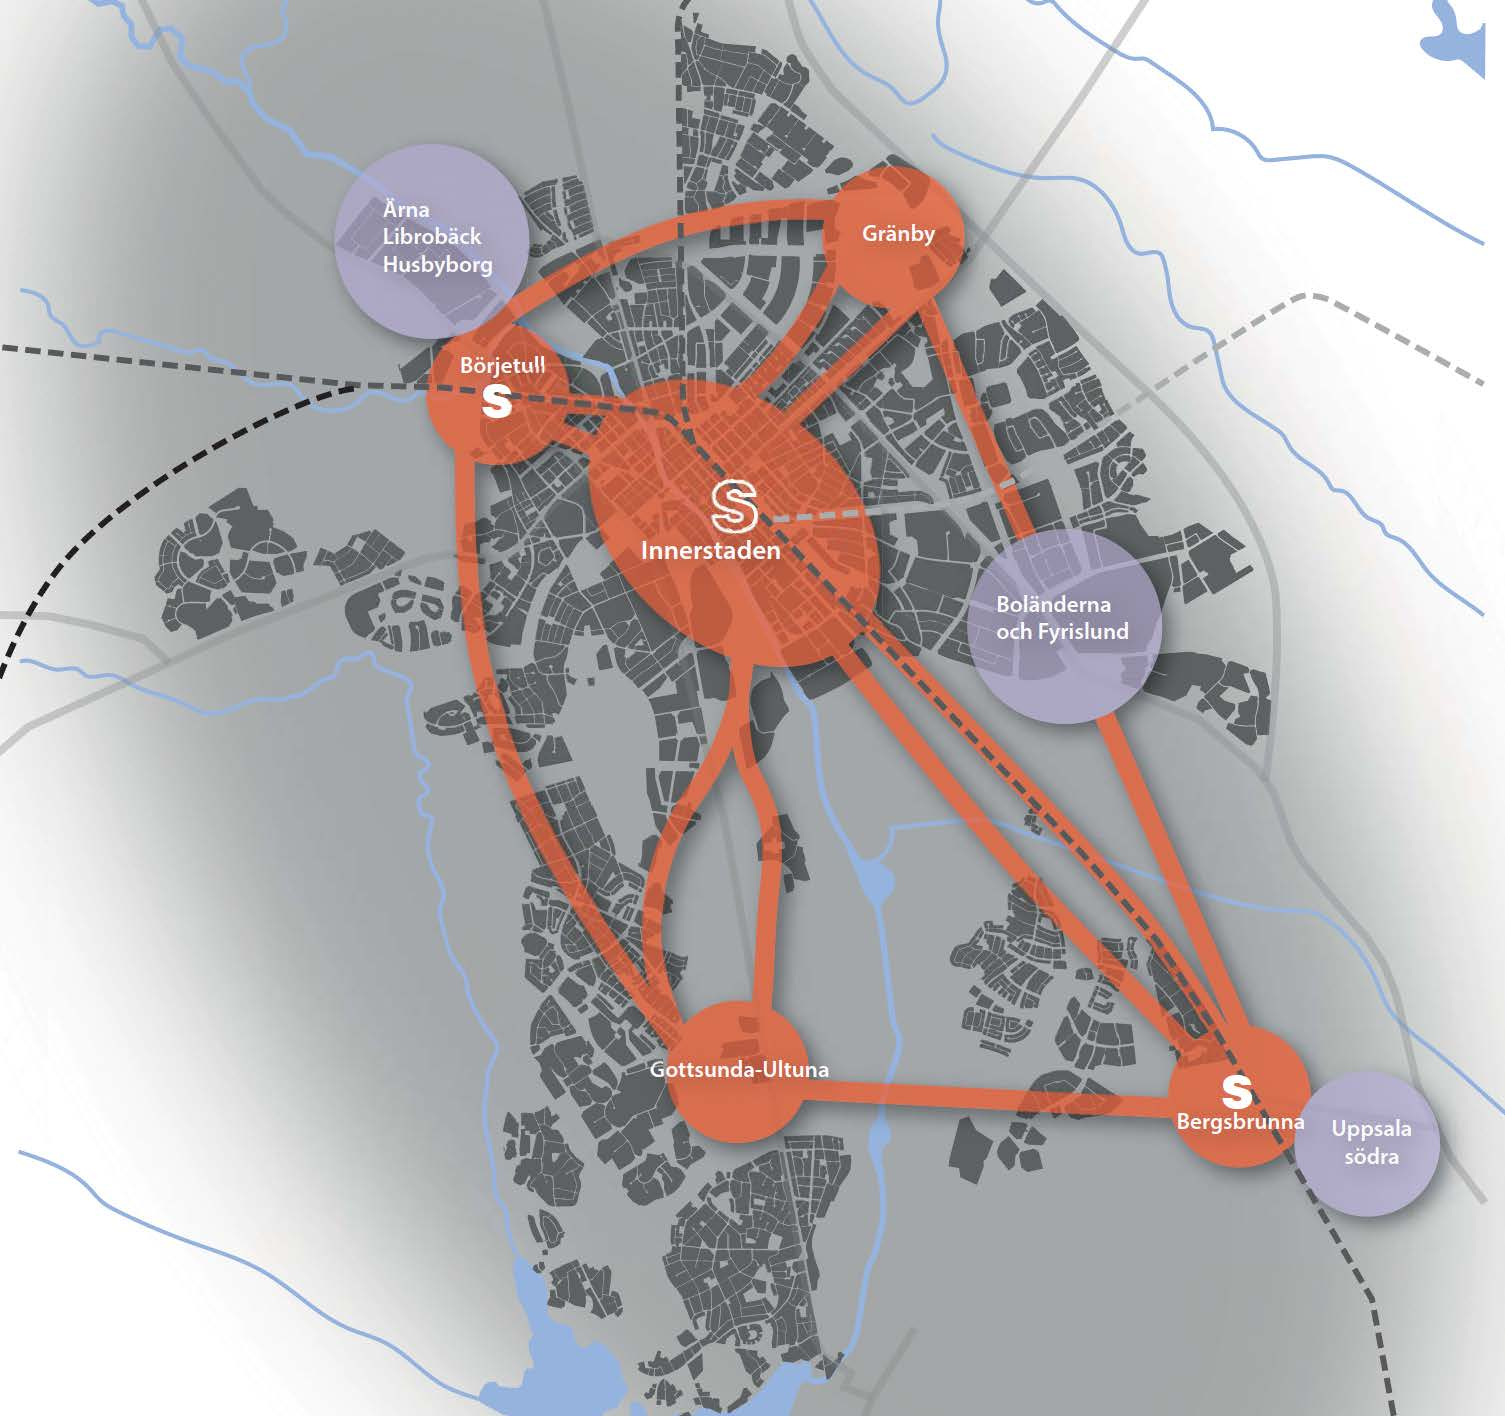 Fyra stadsnoder & innerstaden kopplas samman med snabb kollektivtrafik Femkärningen 1.